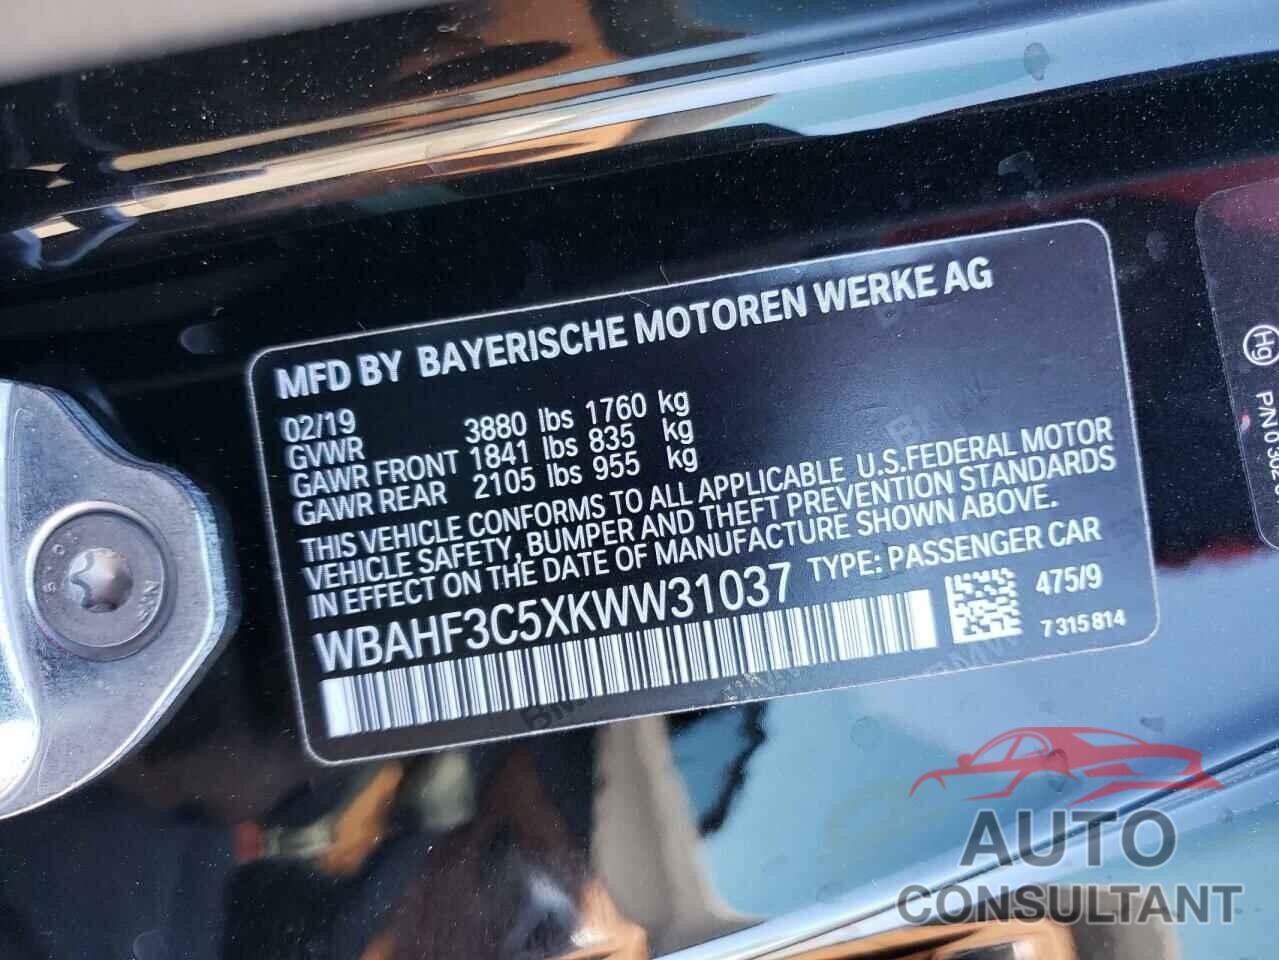 BMW Z4 2019 - WBAHF3C5XKWW31037